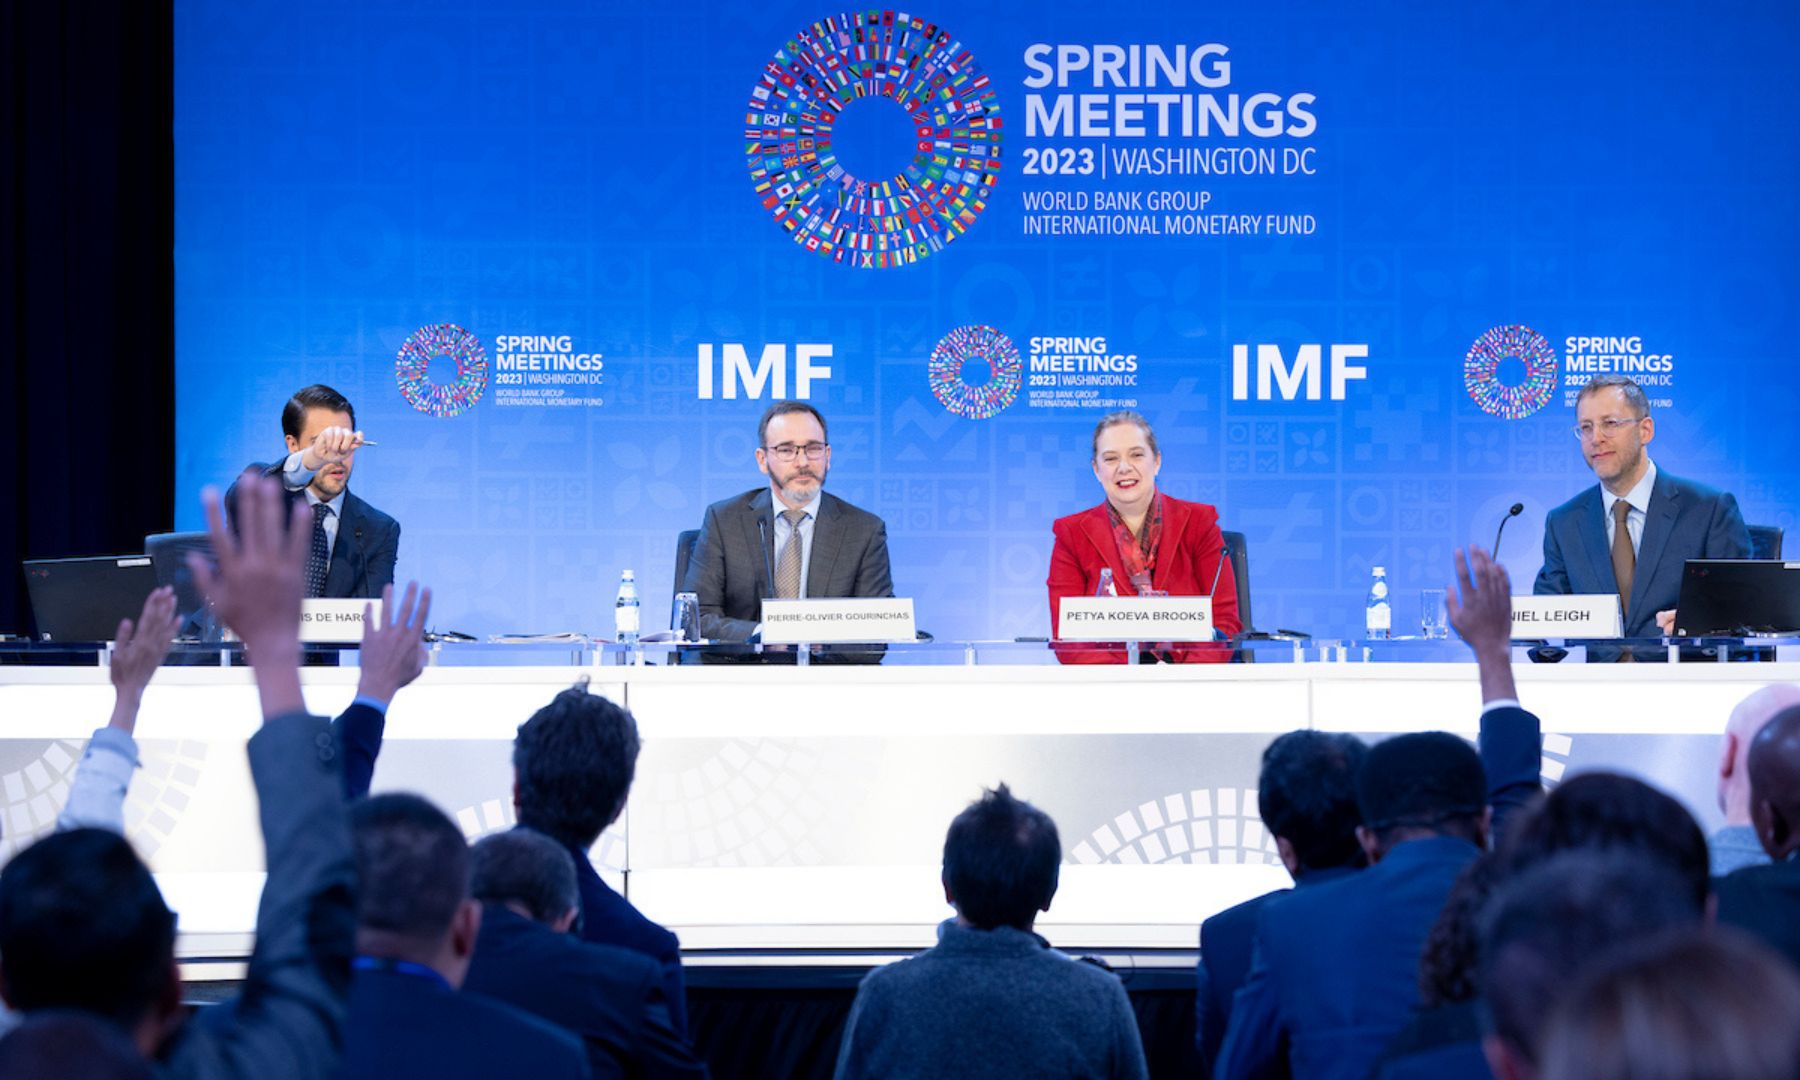 IMF Spring Meetings Update | April 11, 2023